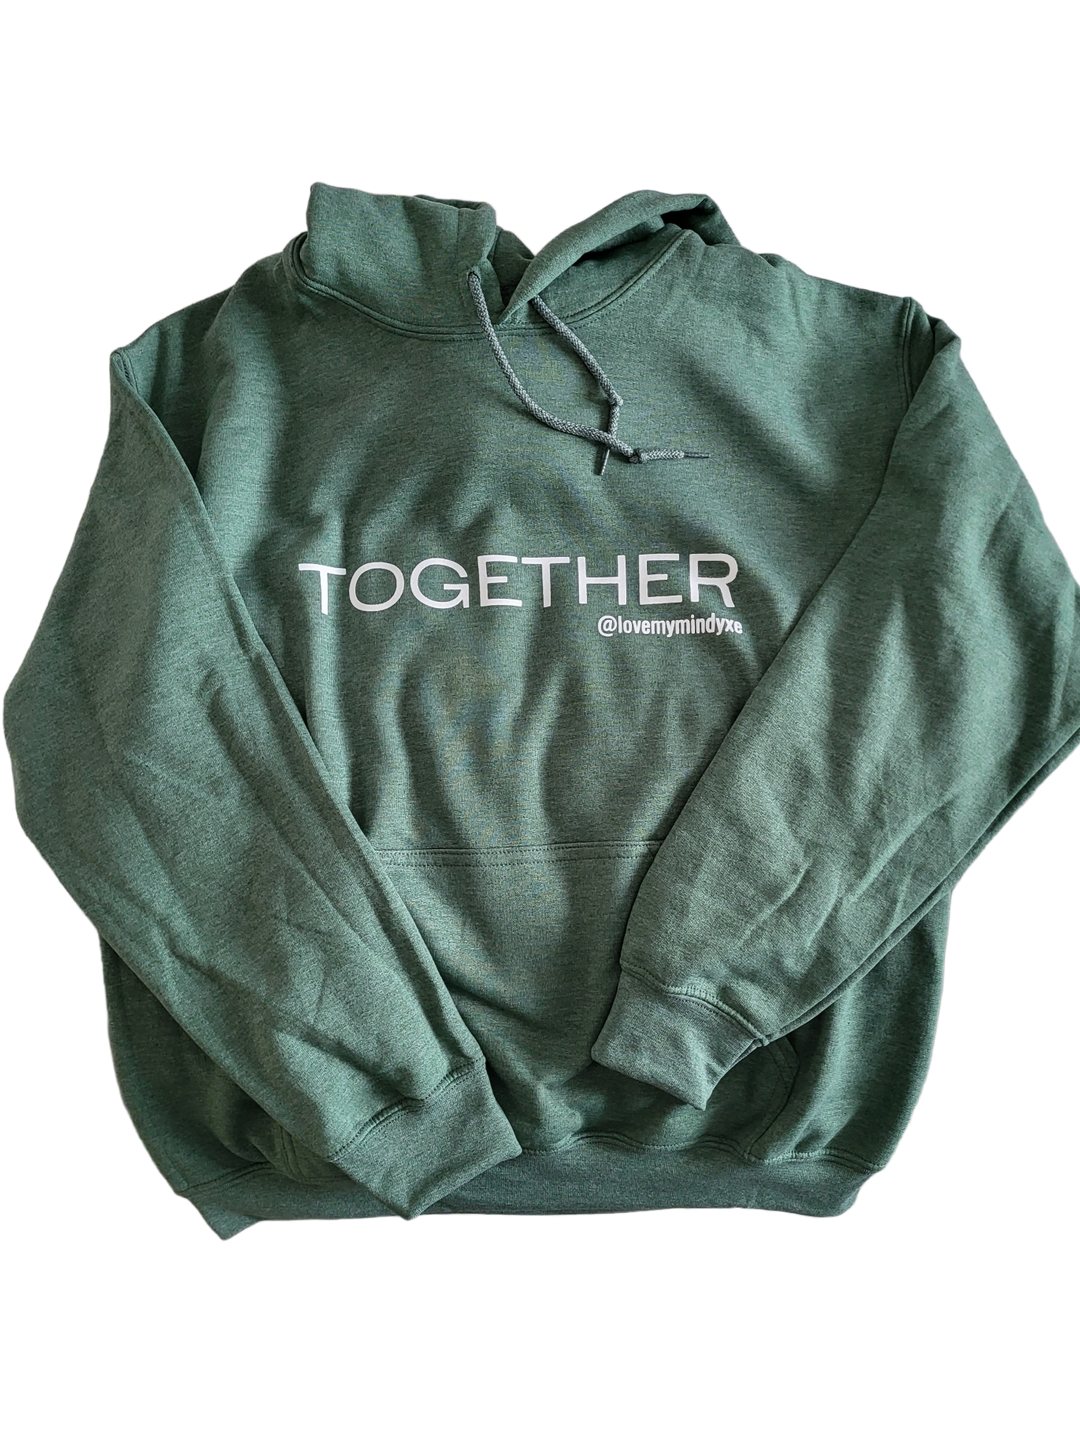 Adult Heavy Blend Hooded Sweatshirt  - TOGETHER @lovemymind - Heather Sport Dark Green